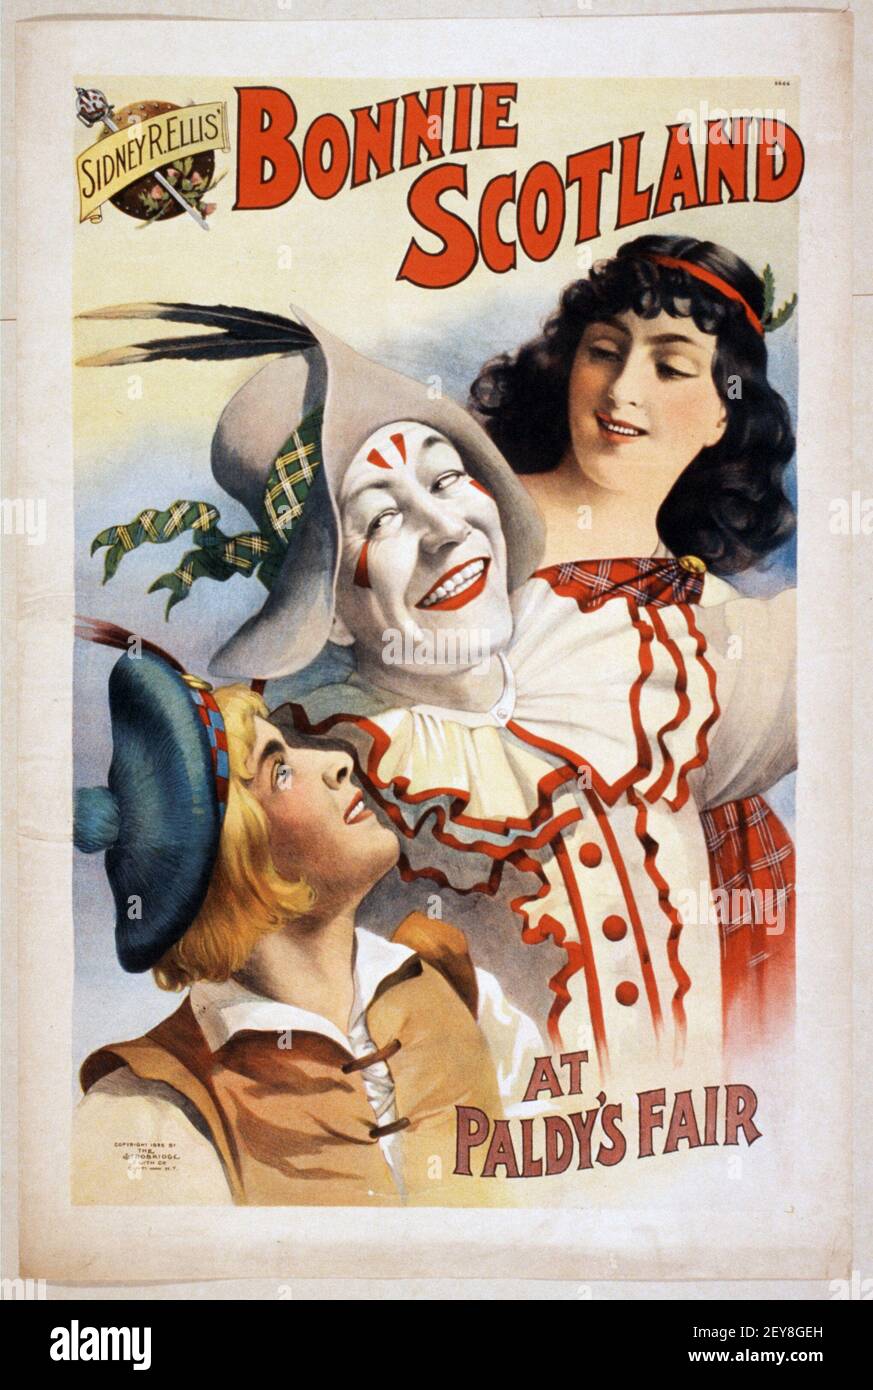 Sidney Rellis' Bonnie Scotland auf der Paldy's Fair. Zirkusposter / Werbung, antik und im alten Stil Stockfoto